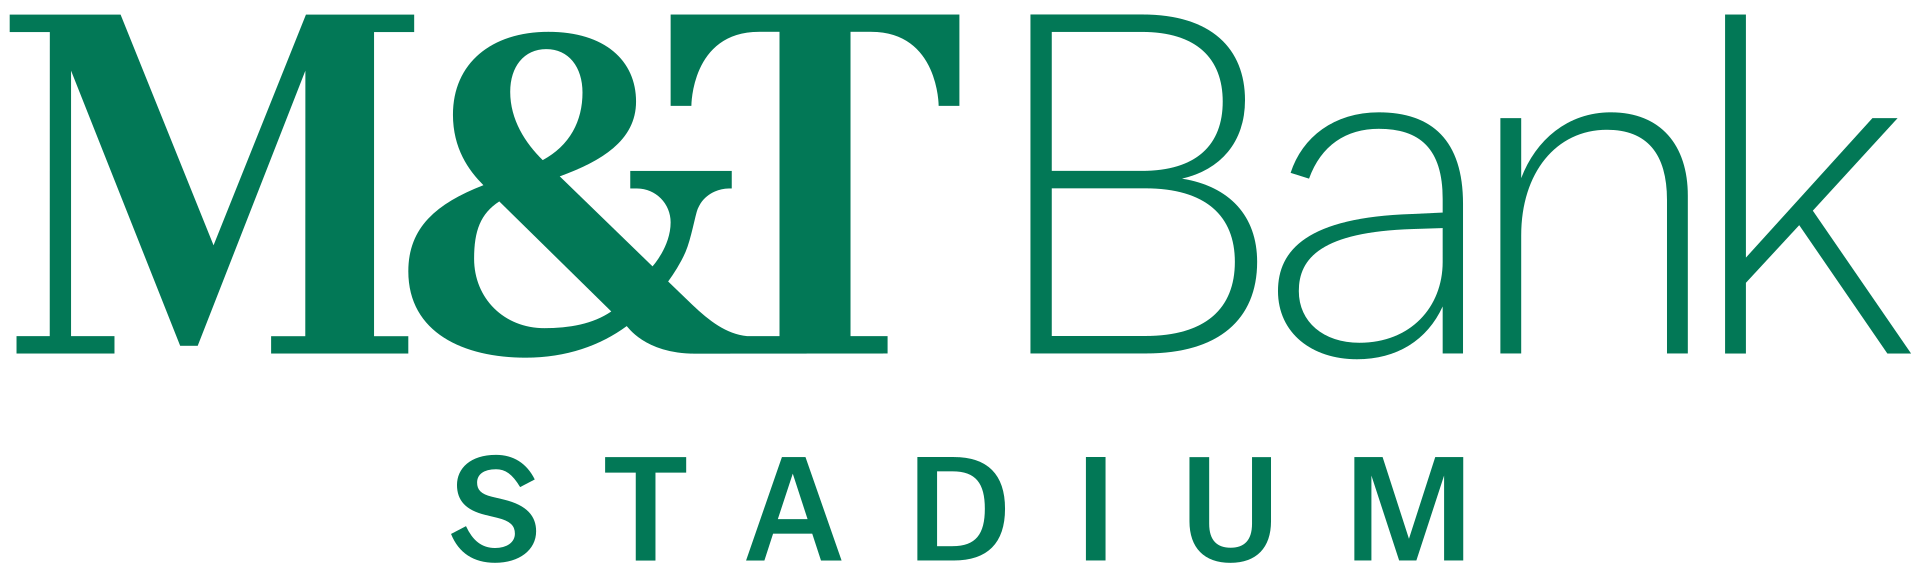 M&T Bank Stadium Logo